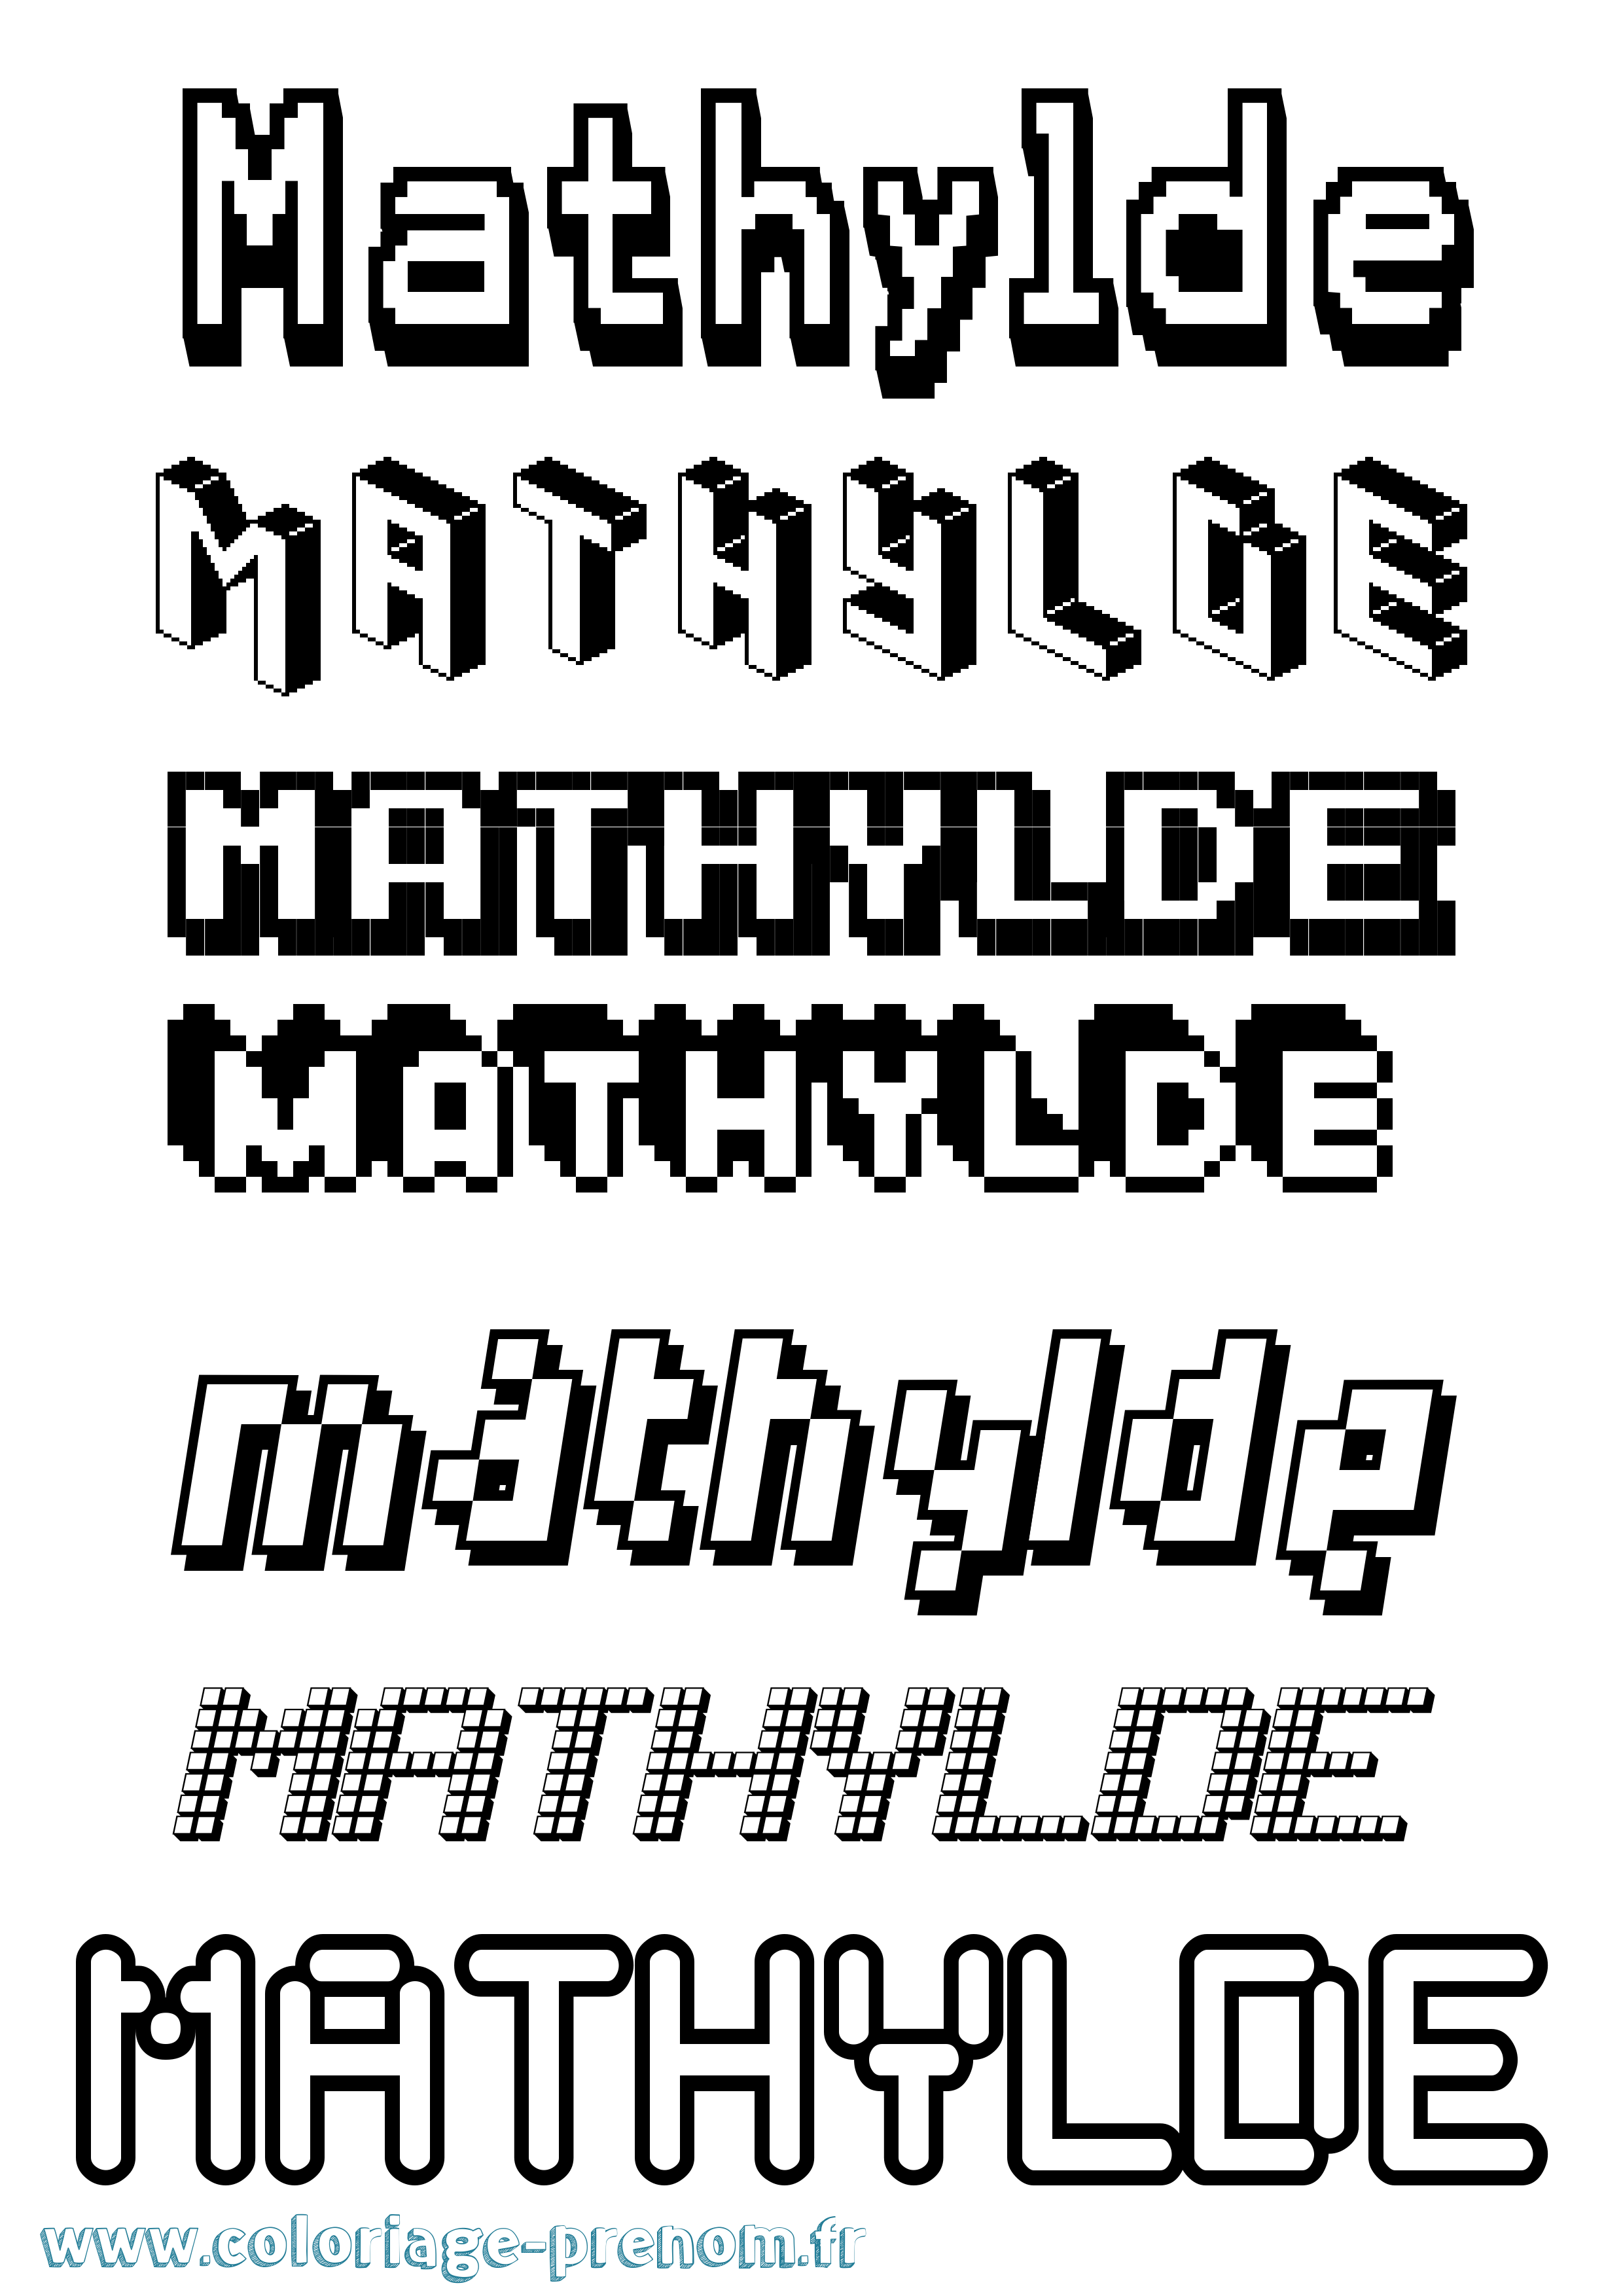 Coloriage prénom Mathylde Pixel